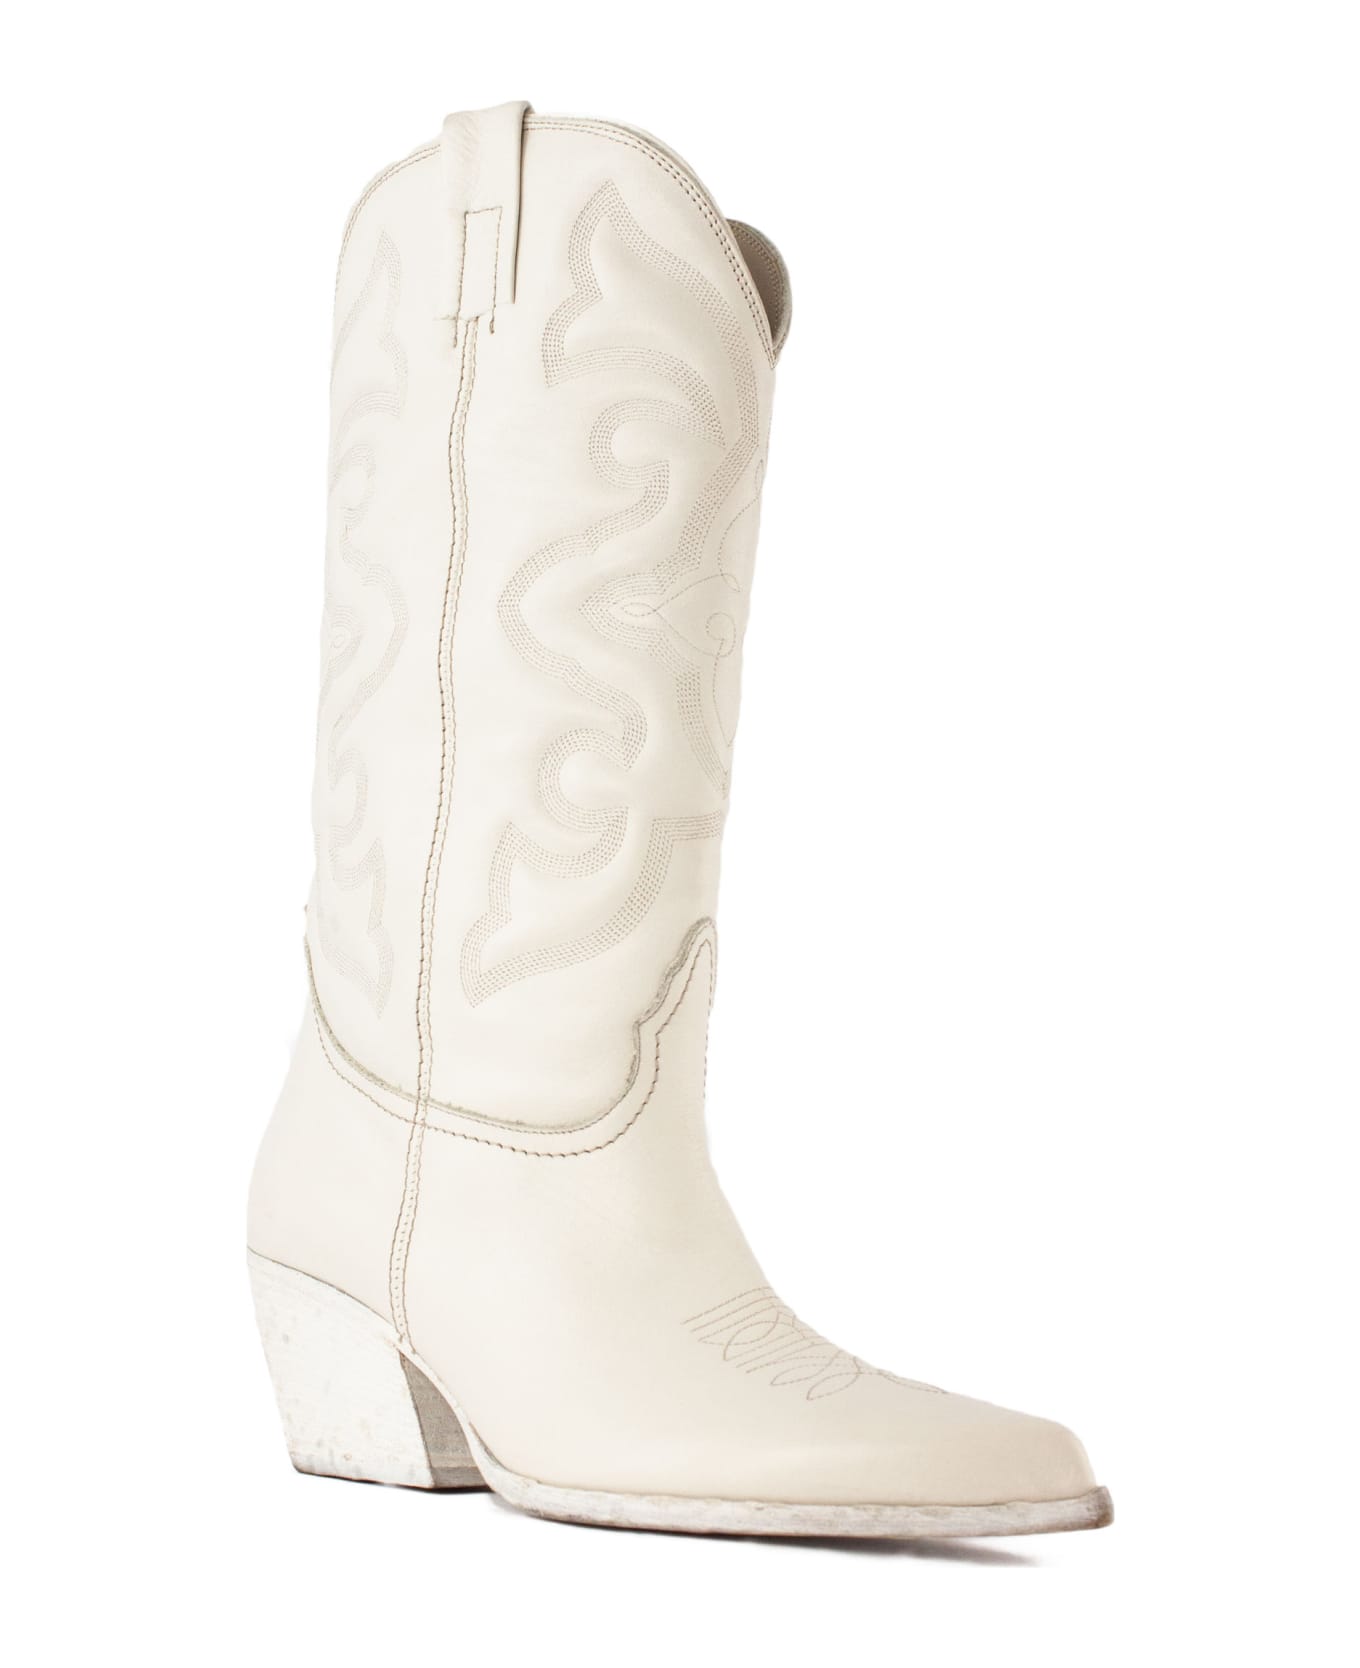 Elena Iachi White Leather Texan Boots - White ブーツ